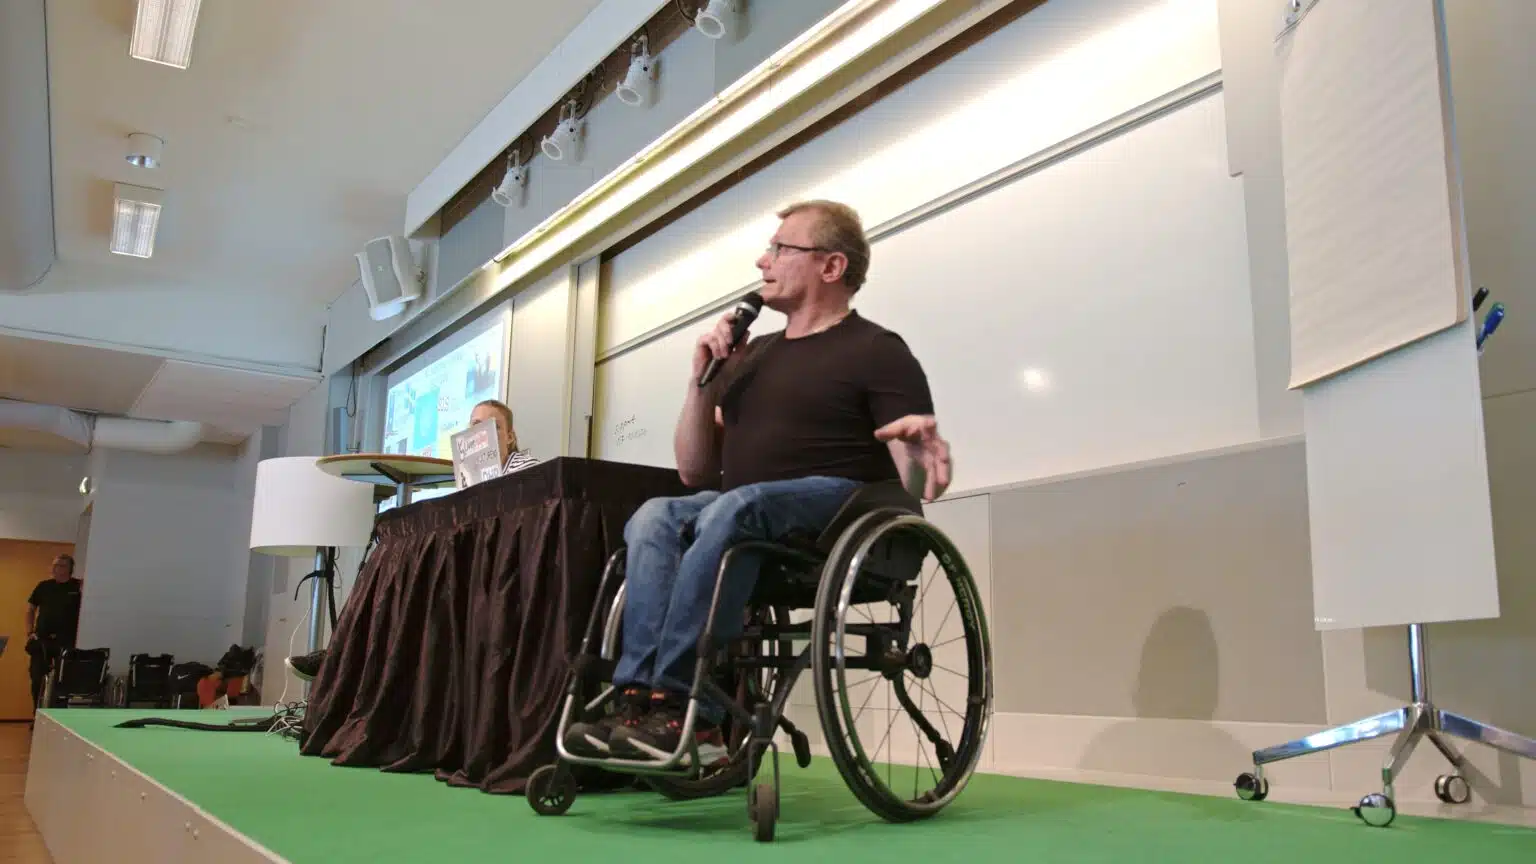 Föreläsare Lars-Göran Wadén och Anna Bergholtz på scen. Lars-Göran sitter i sin rullstol och bakom syns Anna vid en laptopskärm. På väggen en whiteboard.